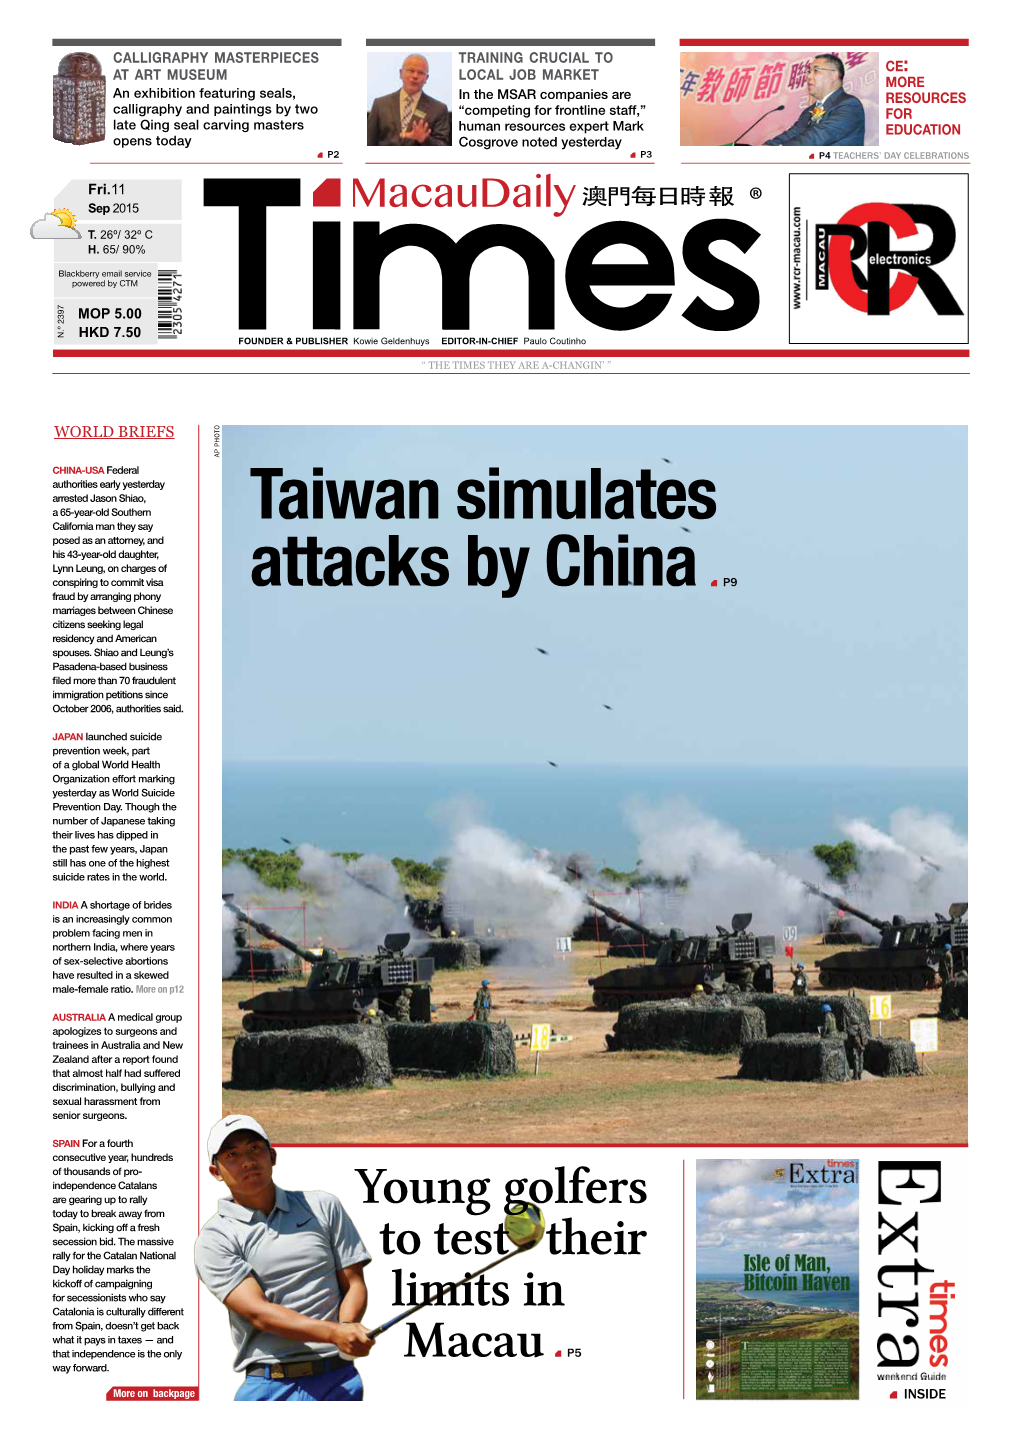 Taiwan Simulates Attacks by China P9